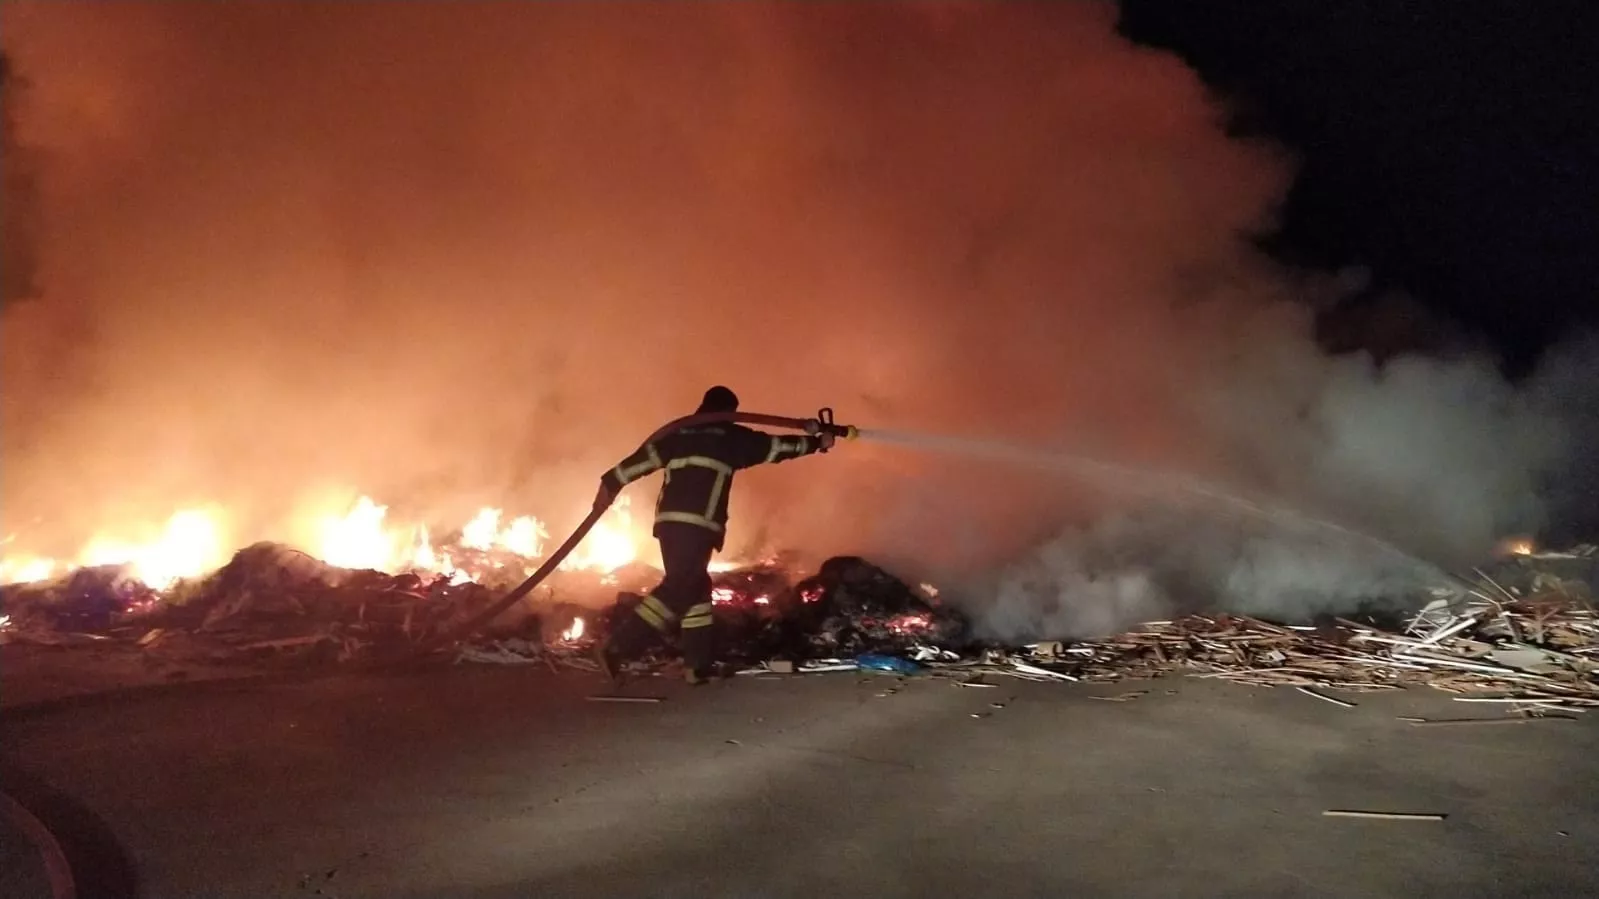 Bingöl'de organize sanayi bölgesinde yangın